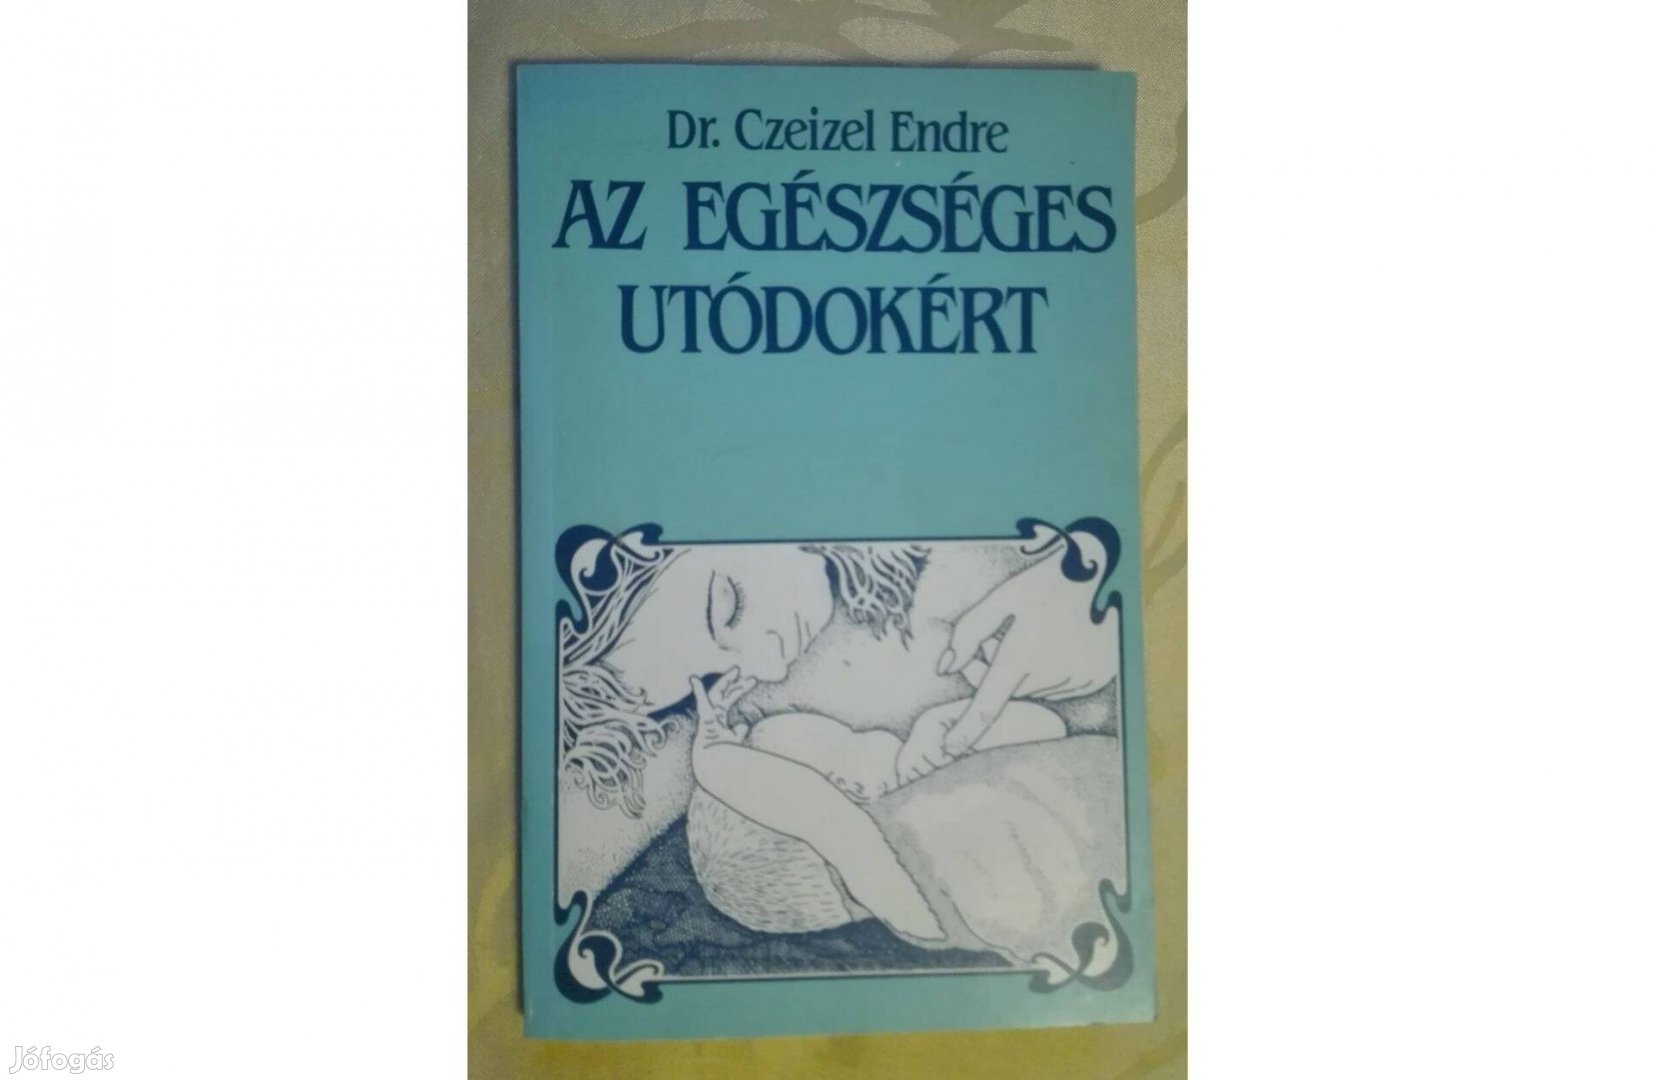 Az egészséges utódokért, írta: Dr. Czeizel Endre (olvasatlan)